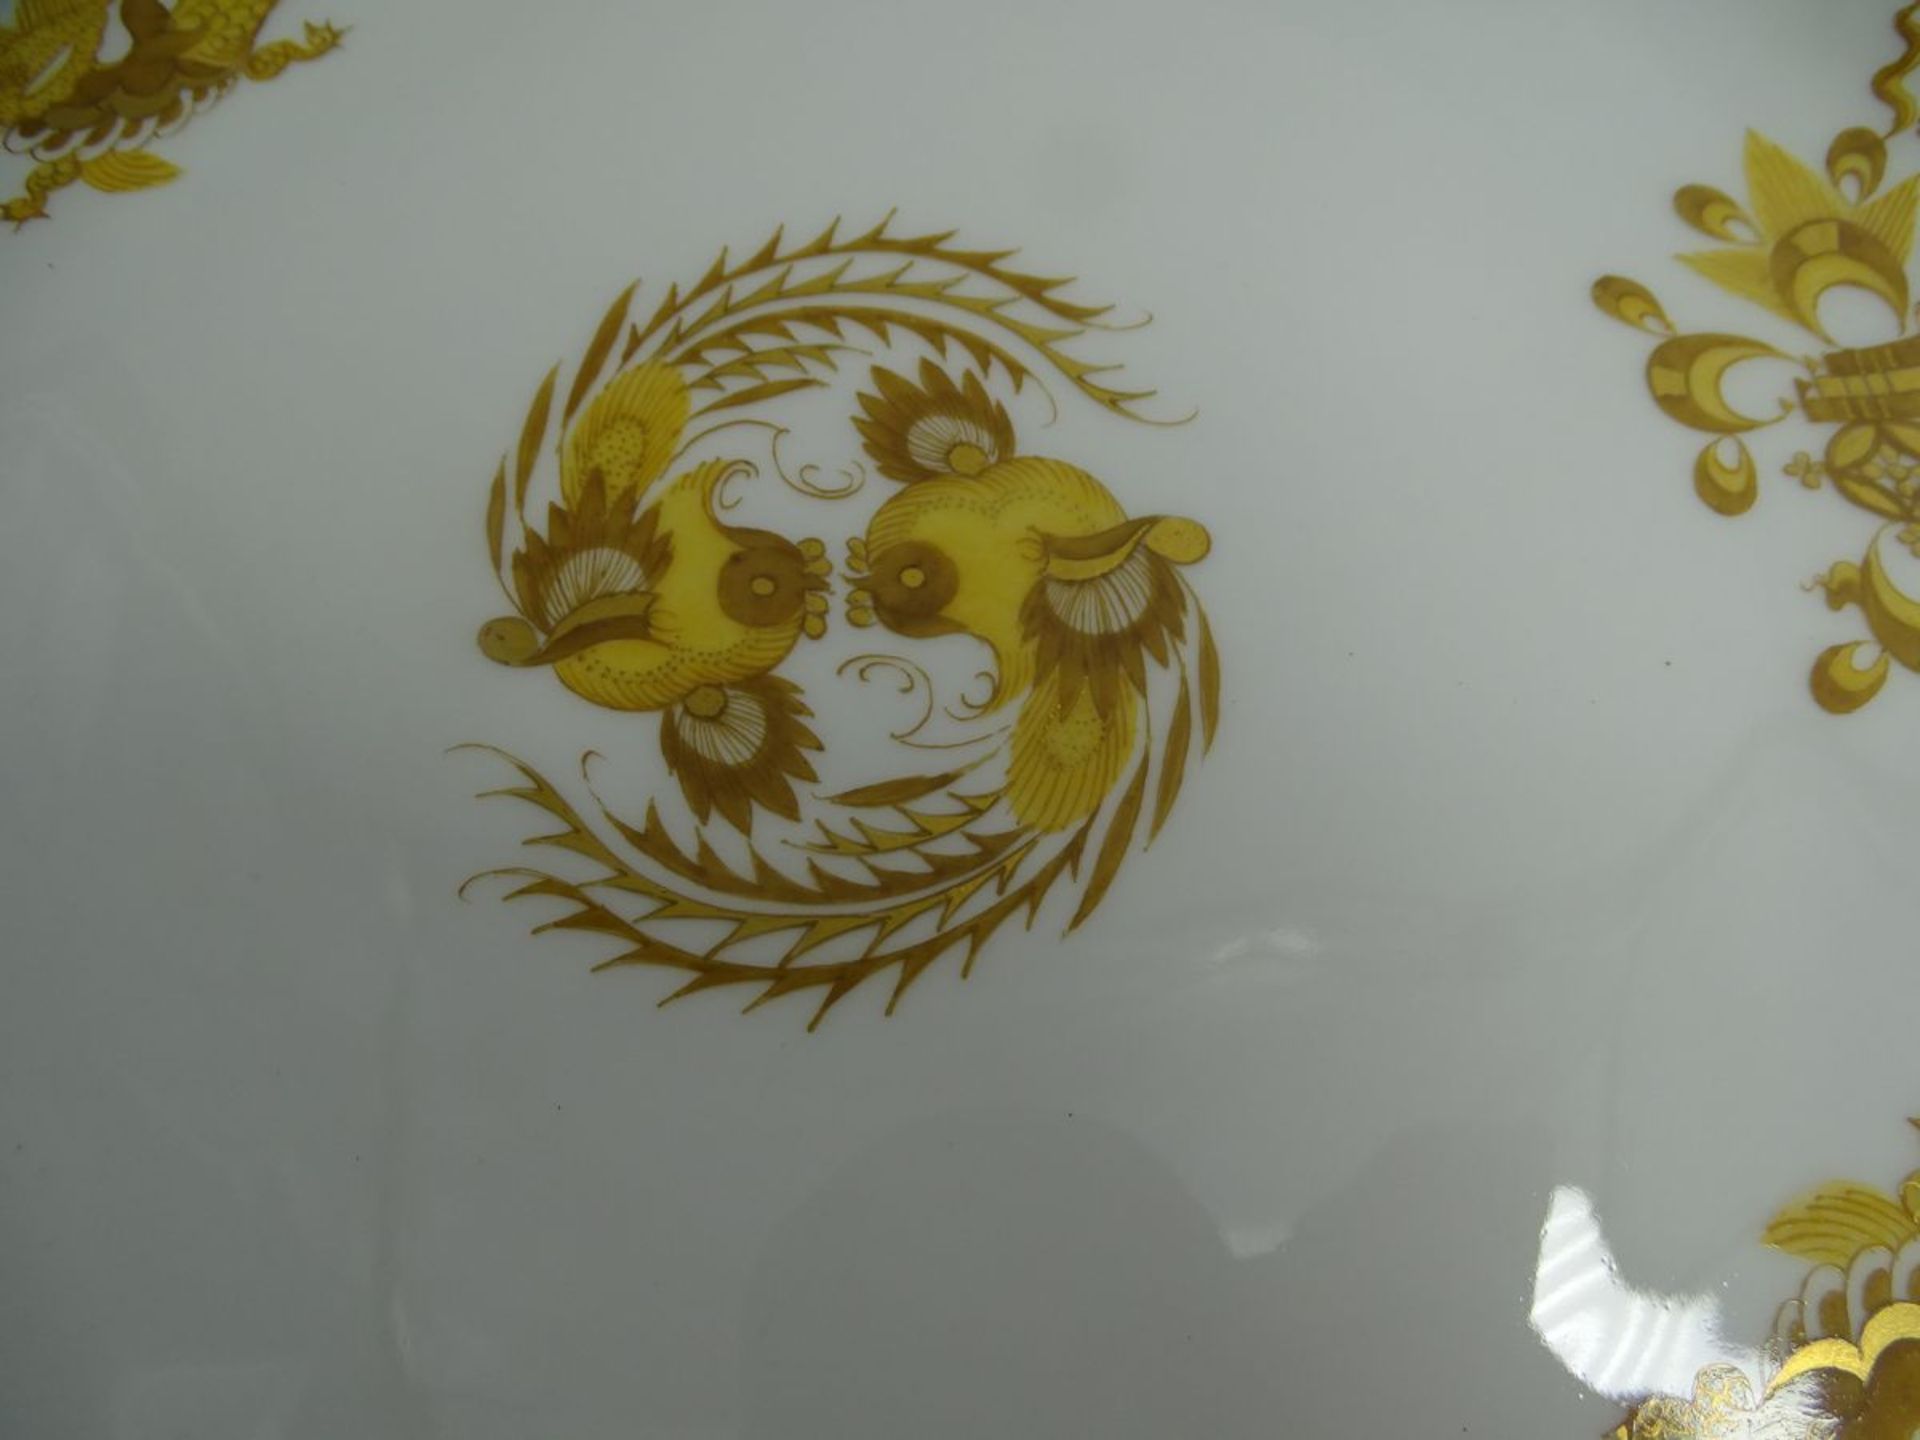 gr. Kuchenteller "Meissen" gelber Drache, 1.Wahl, D-27 cm - Bild 3 aus 5